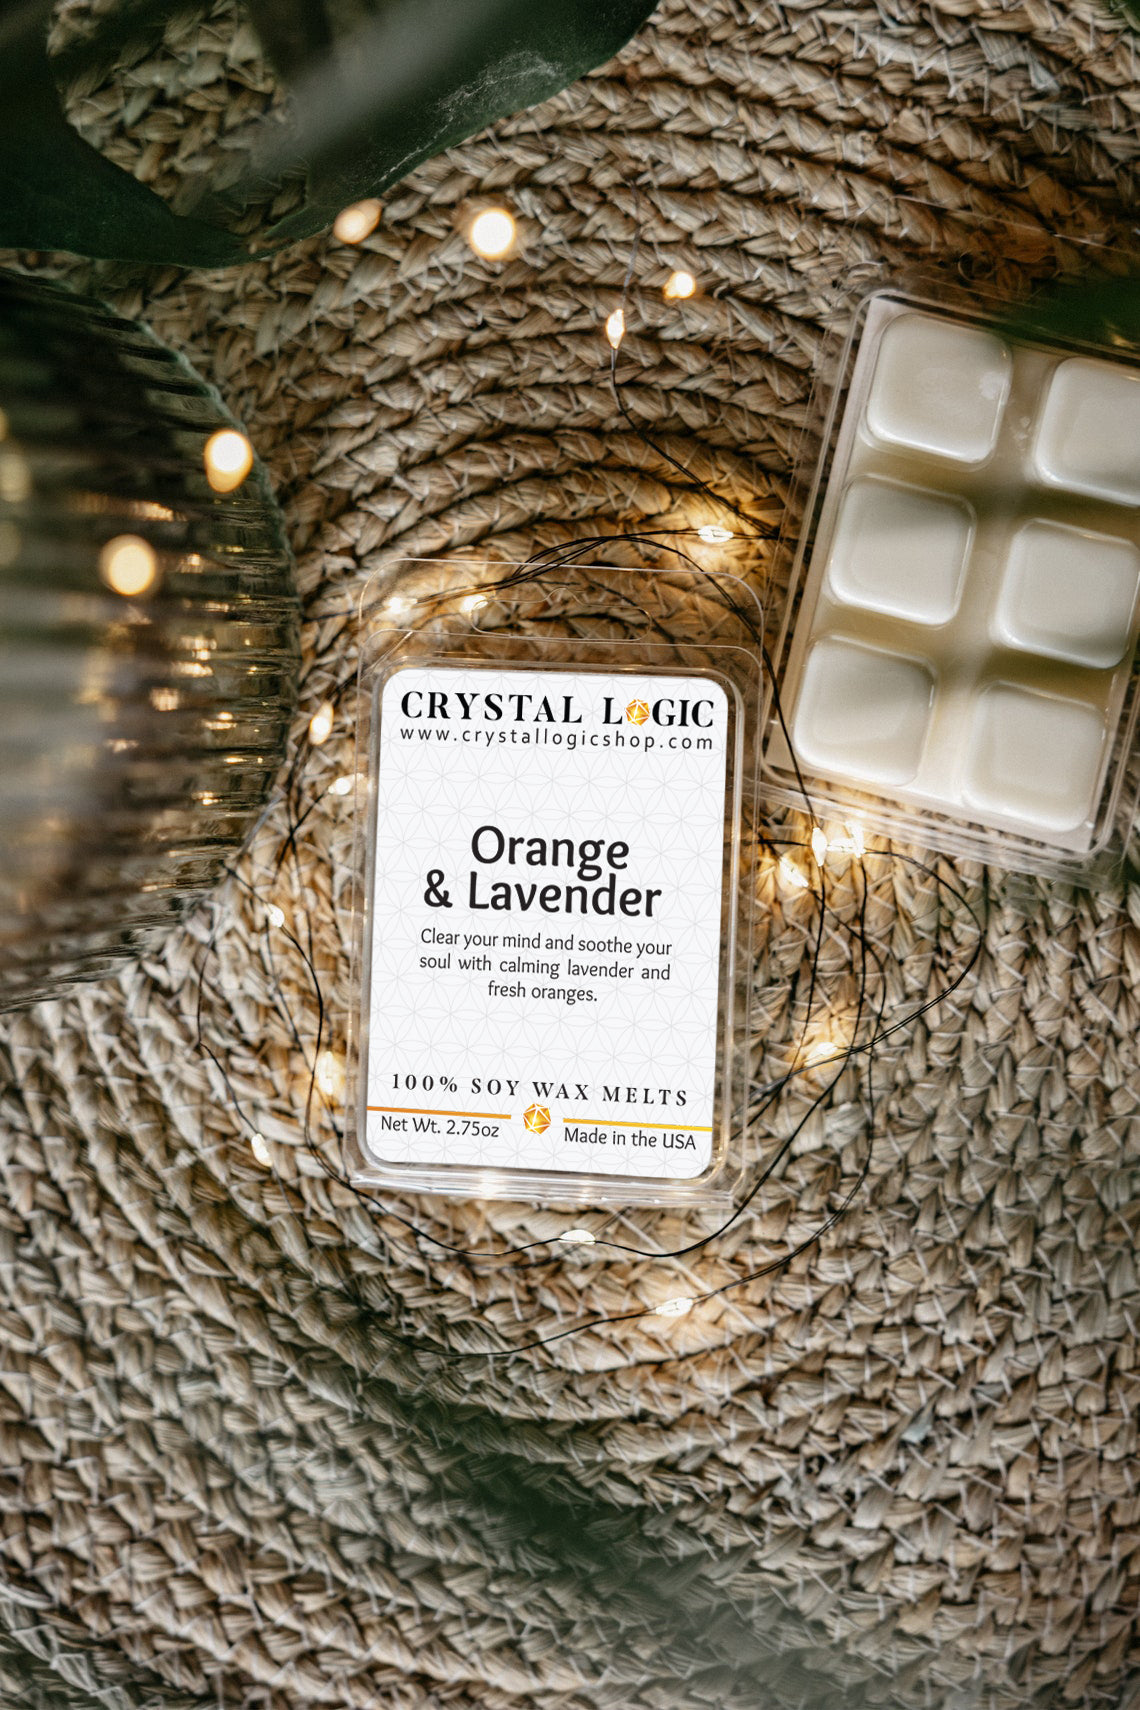 Soy Candle Wax Melts Crystal Logic Shop Orange & Lavender Front & Back